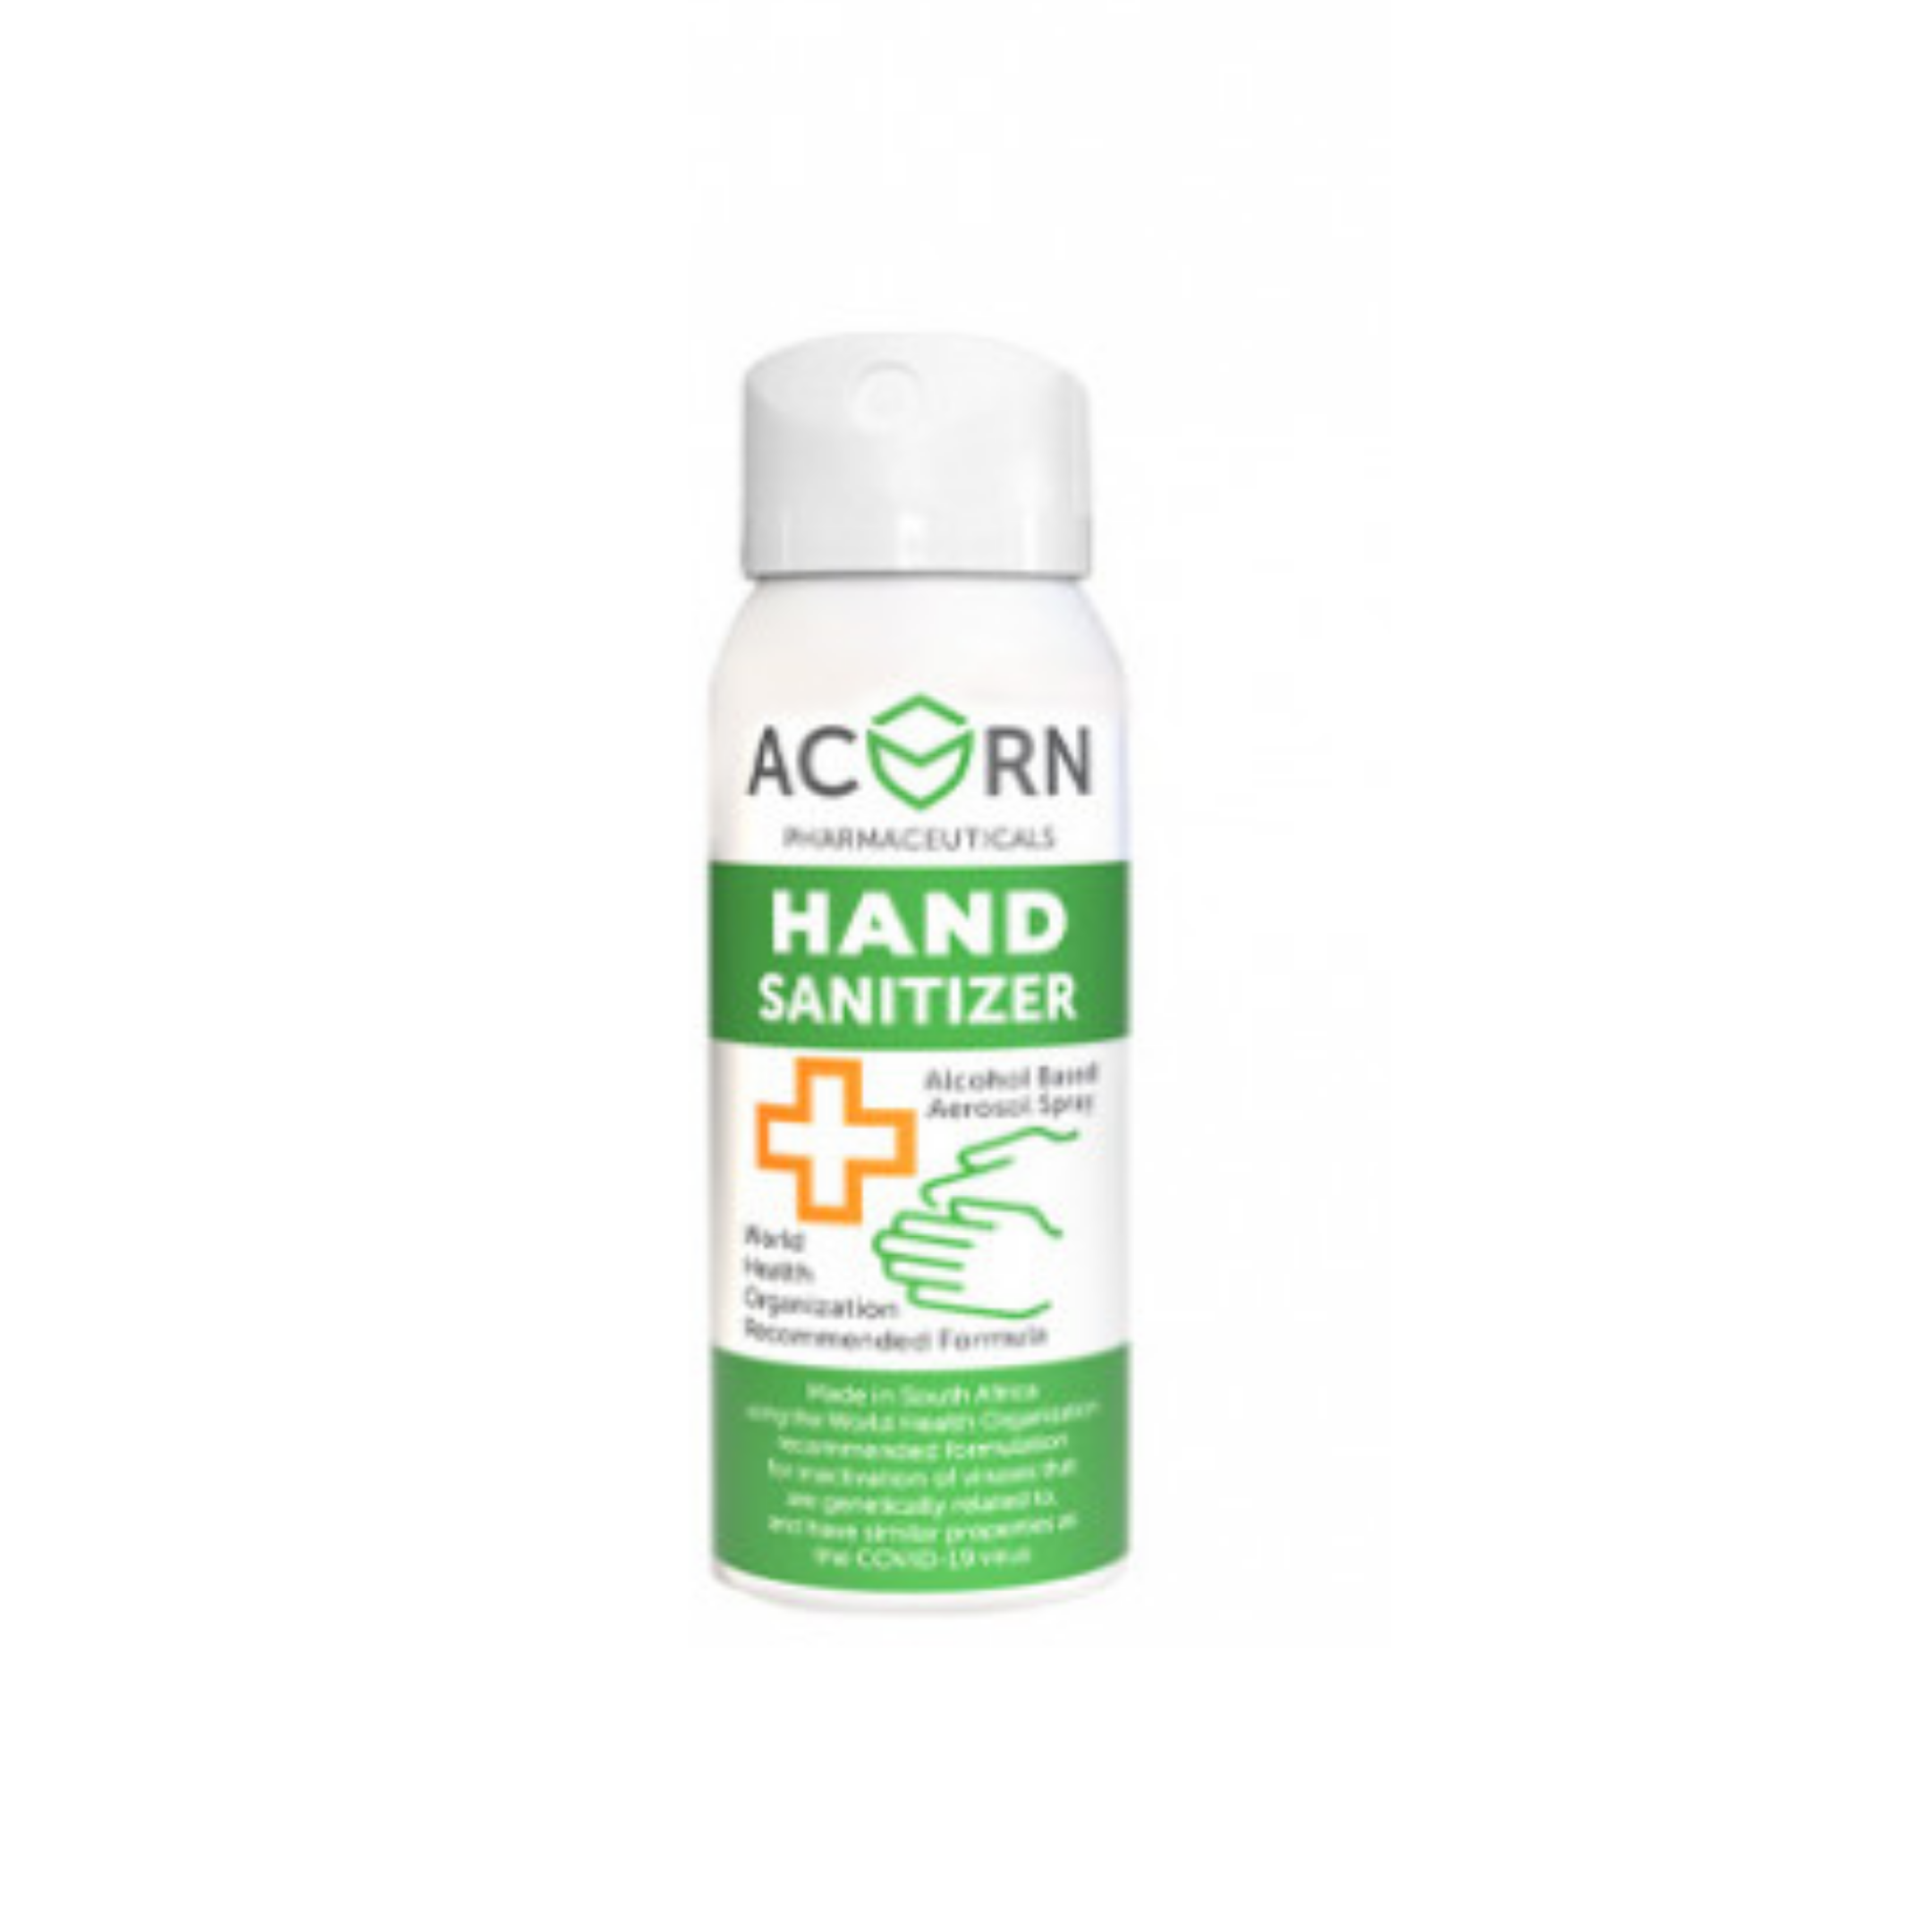 Sanitiser Acorn 75ml Can Hand